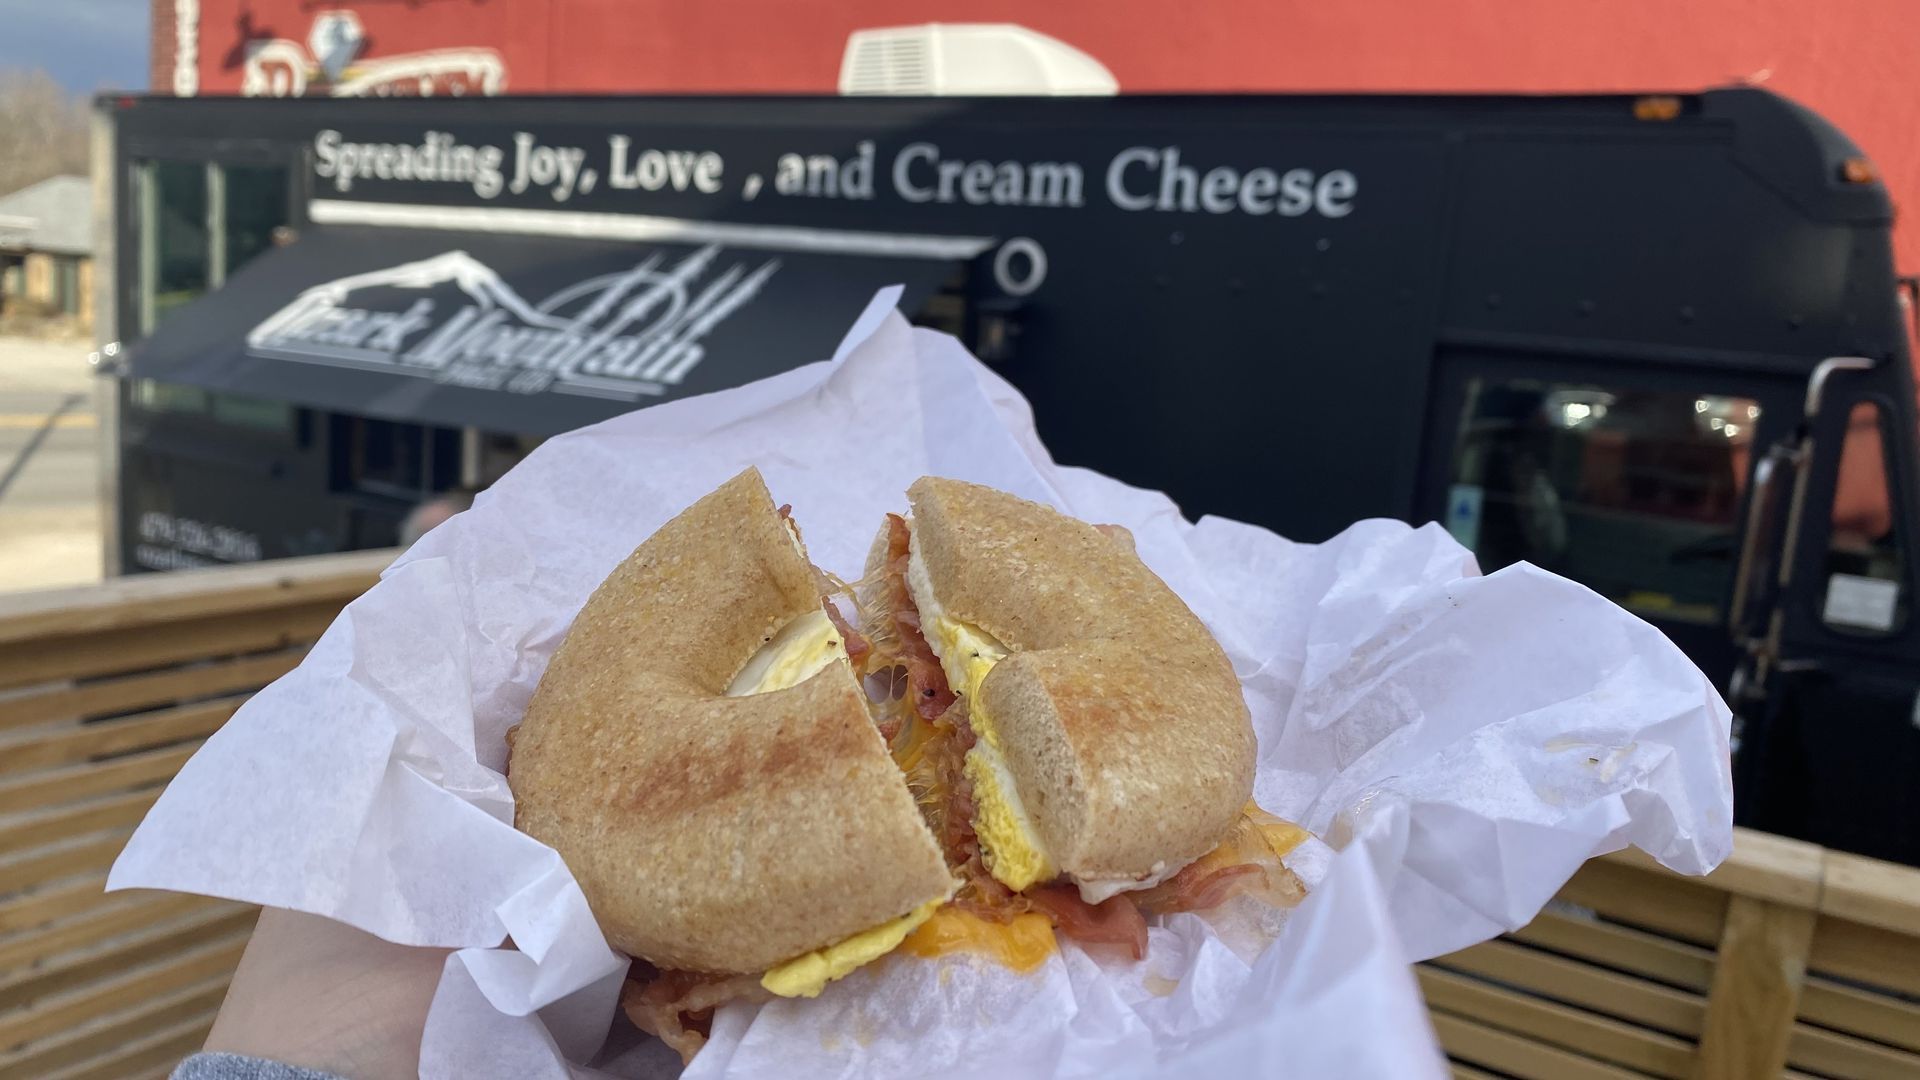 A bagel breakfast sandwich held up in front of a food truck